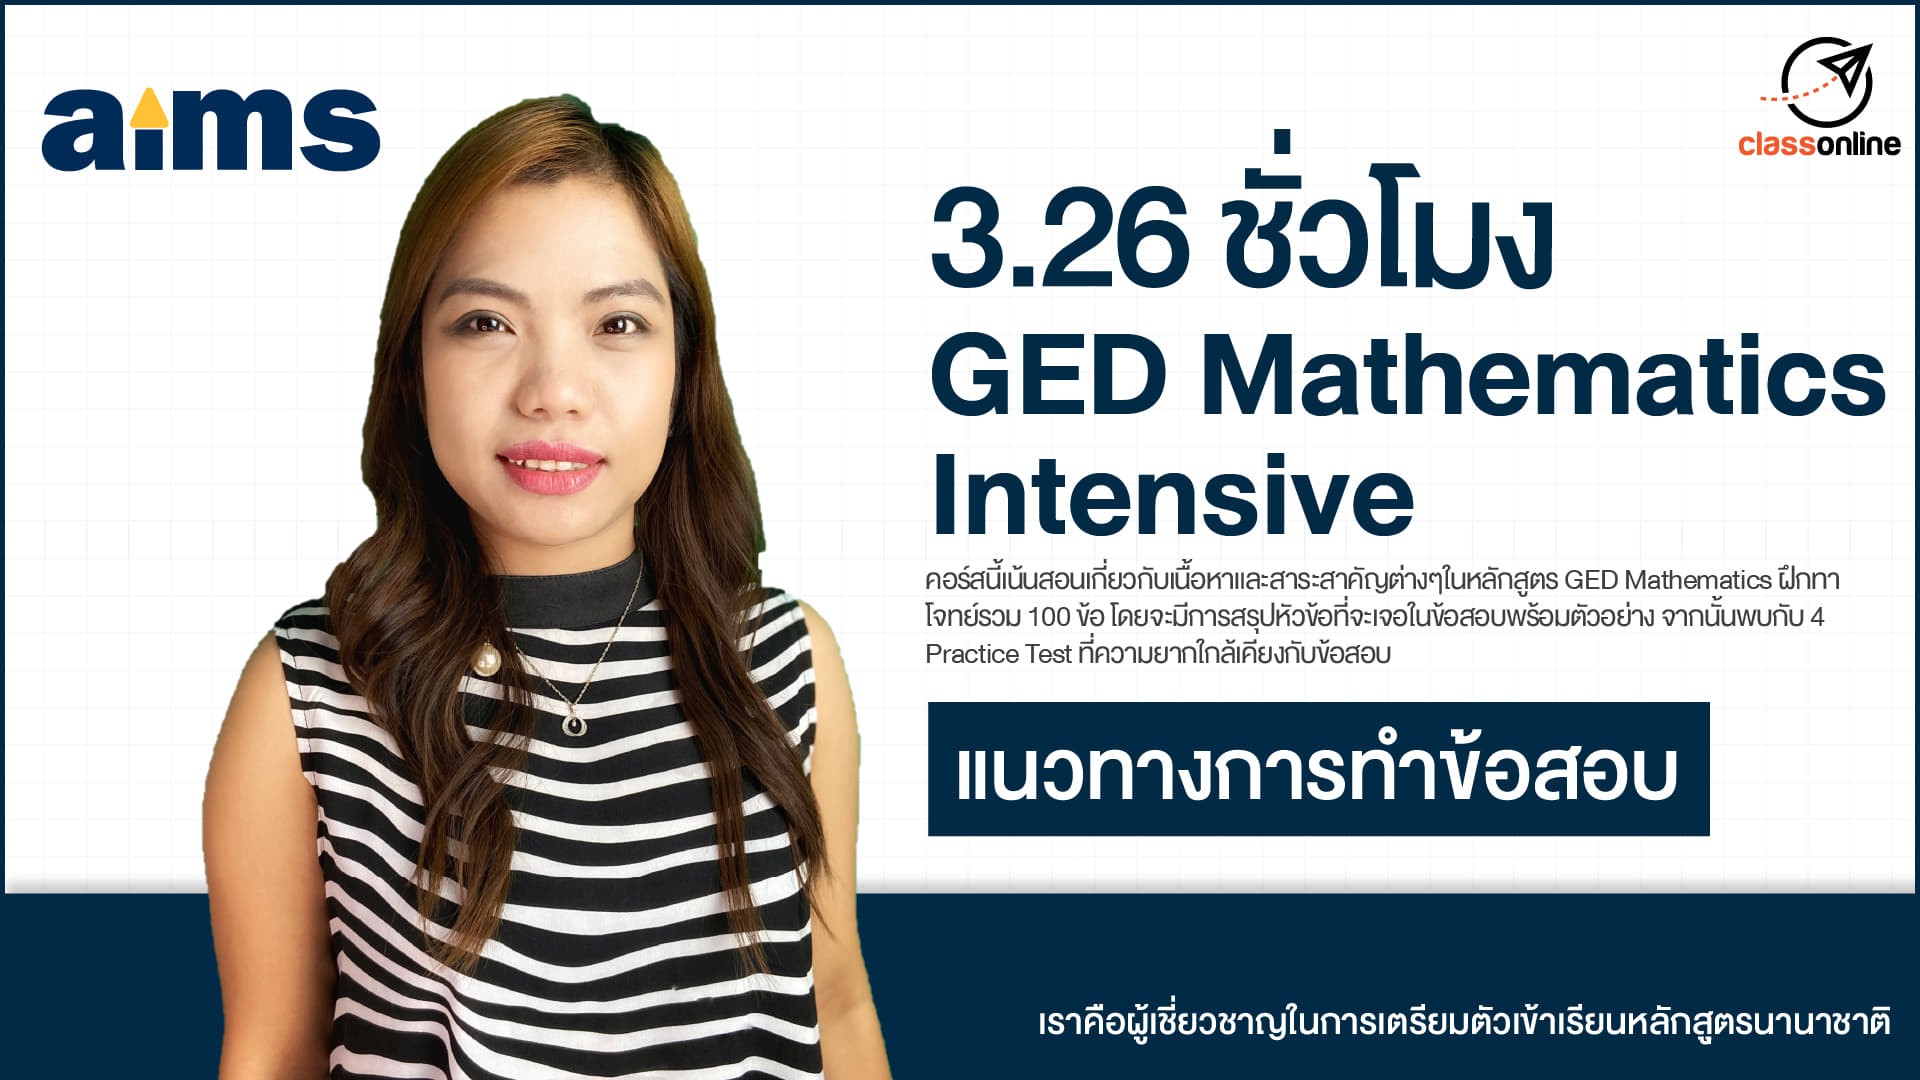 3.26 ชั่วโมง GED Mathematics intensive